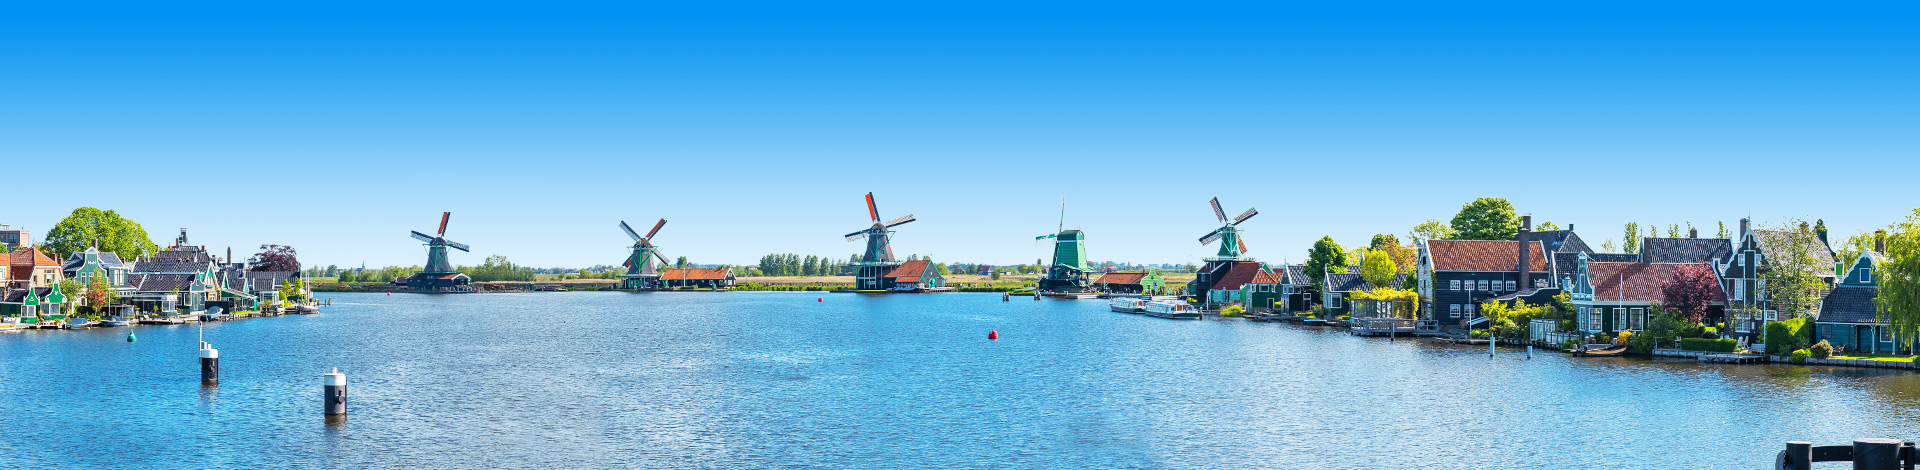 Typisch Nederlandse molens